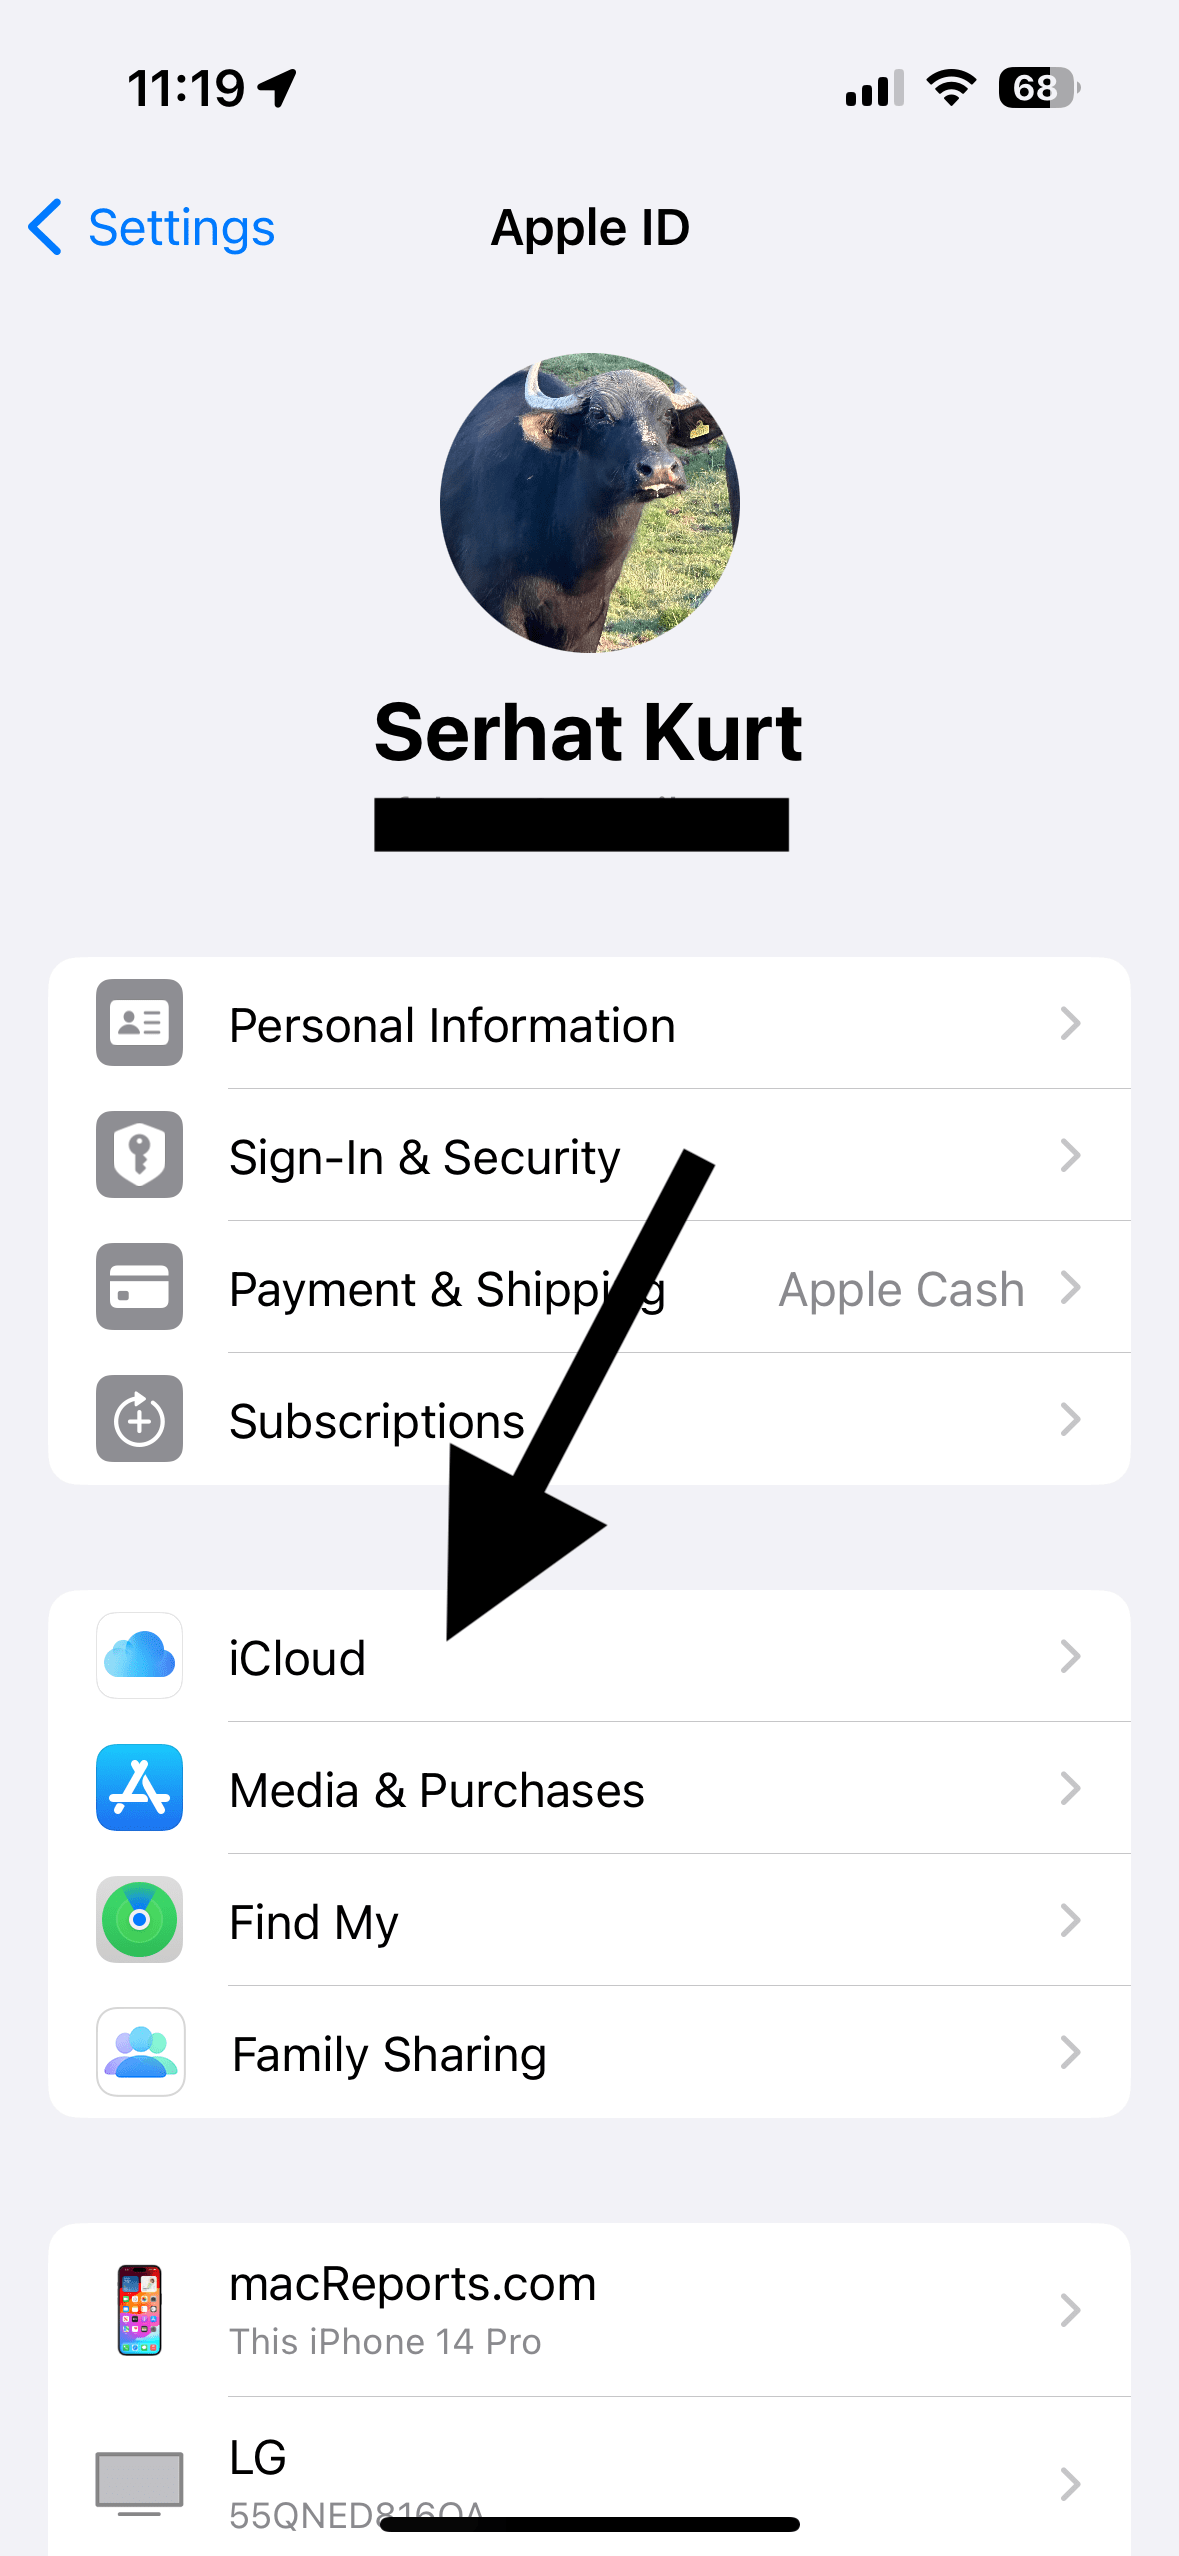 iCloud option in Settings